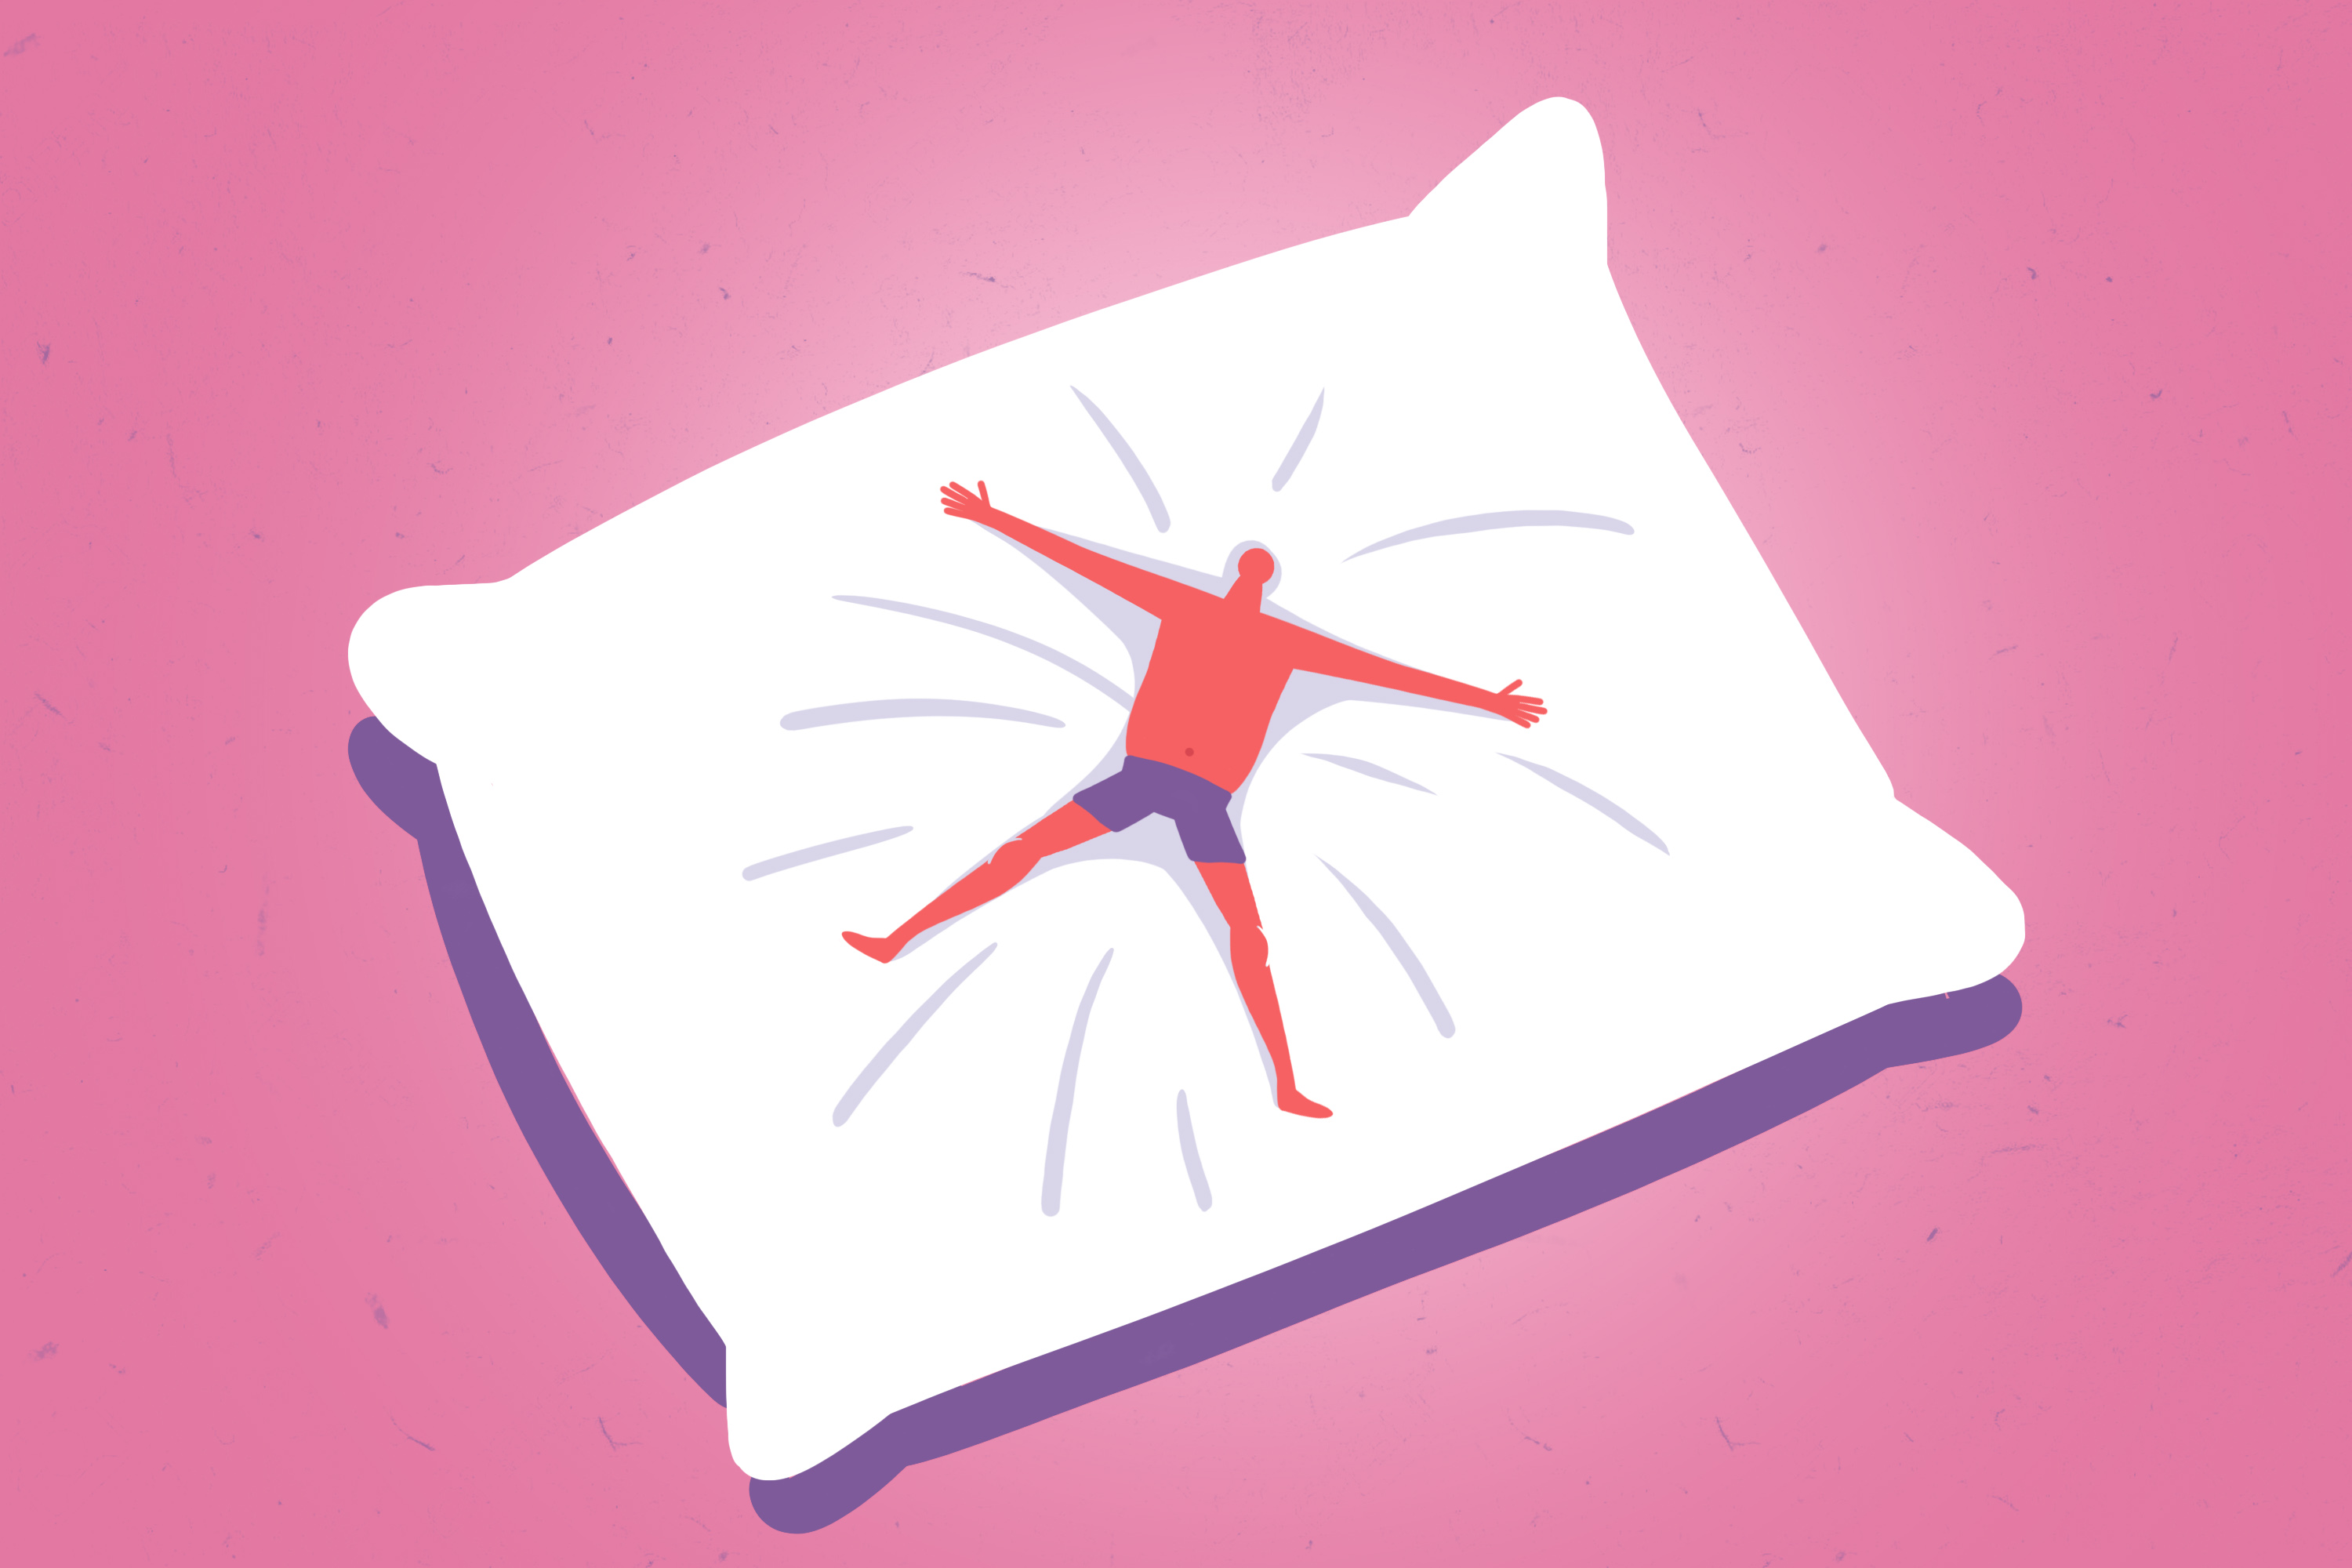 Cómo elegir almohada y no arrepentirte. ¡Es muy fácil!